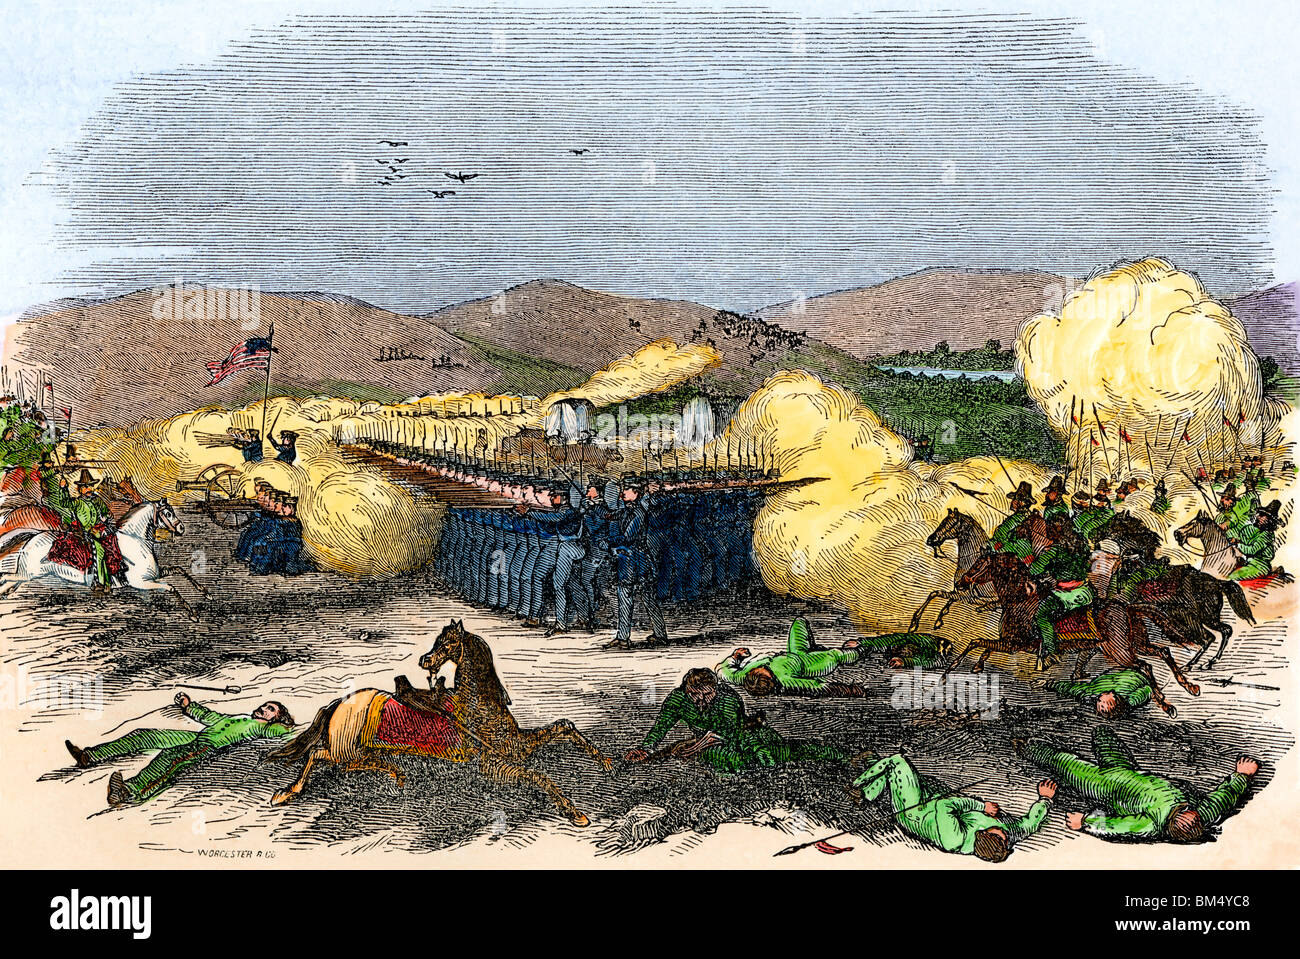 Los marines, marineros, dragones, y los voluntarios hold off ataque mejicano, Batalla de San Gabriel, mexicano-estadounidense, la guerra de 1847. Xilografía coloreada a mano Foto de stock